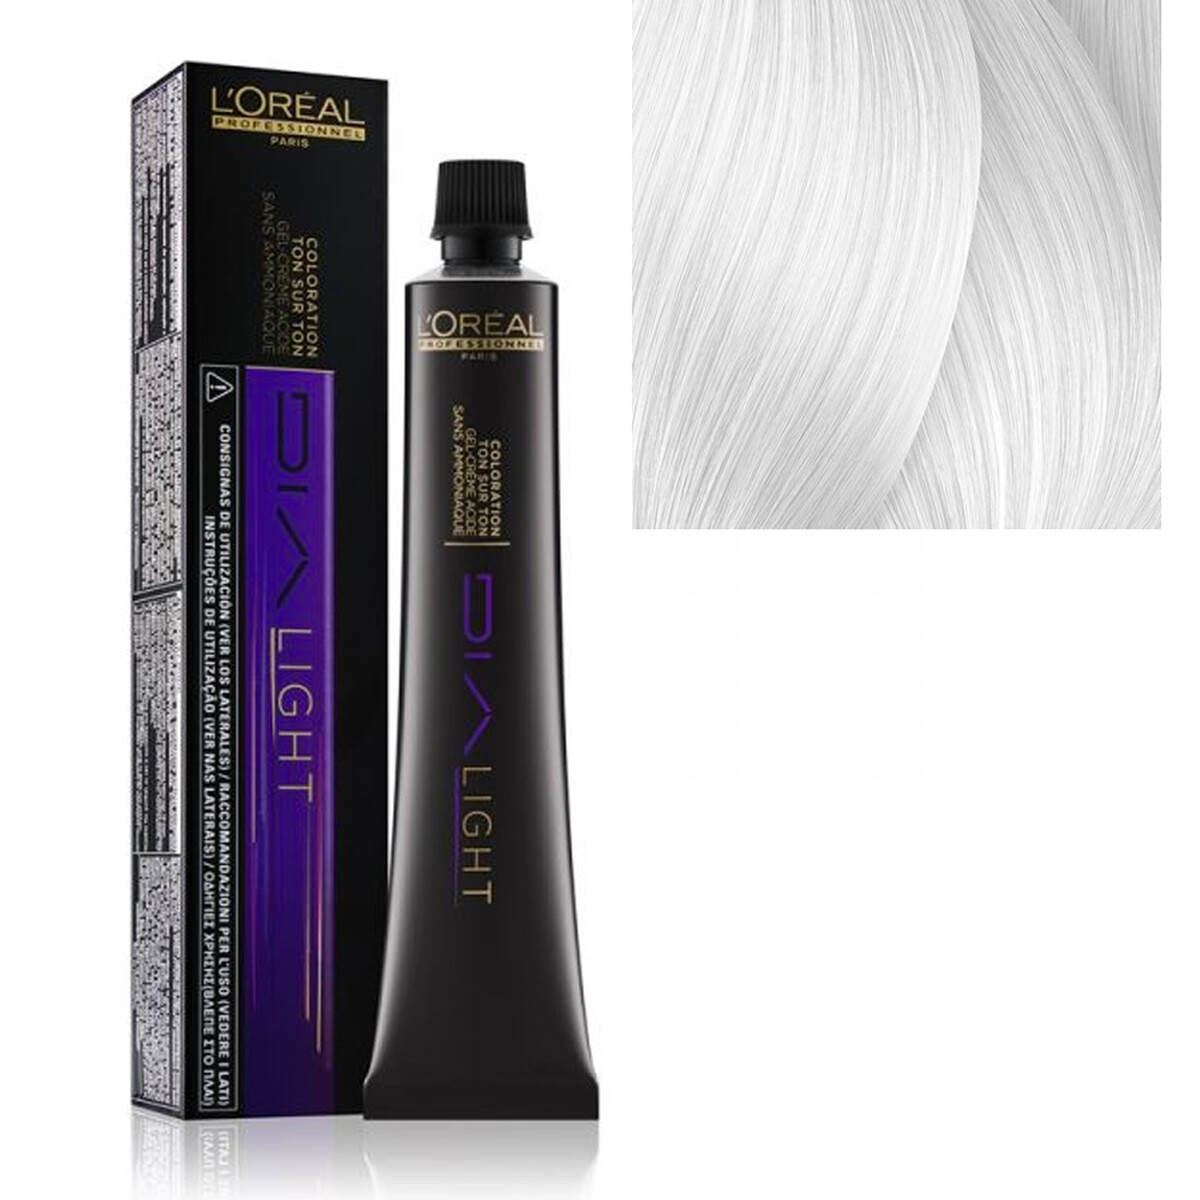 Dia Richesse 9.01 (50ml) - Angel Hair & Beauty Supplies